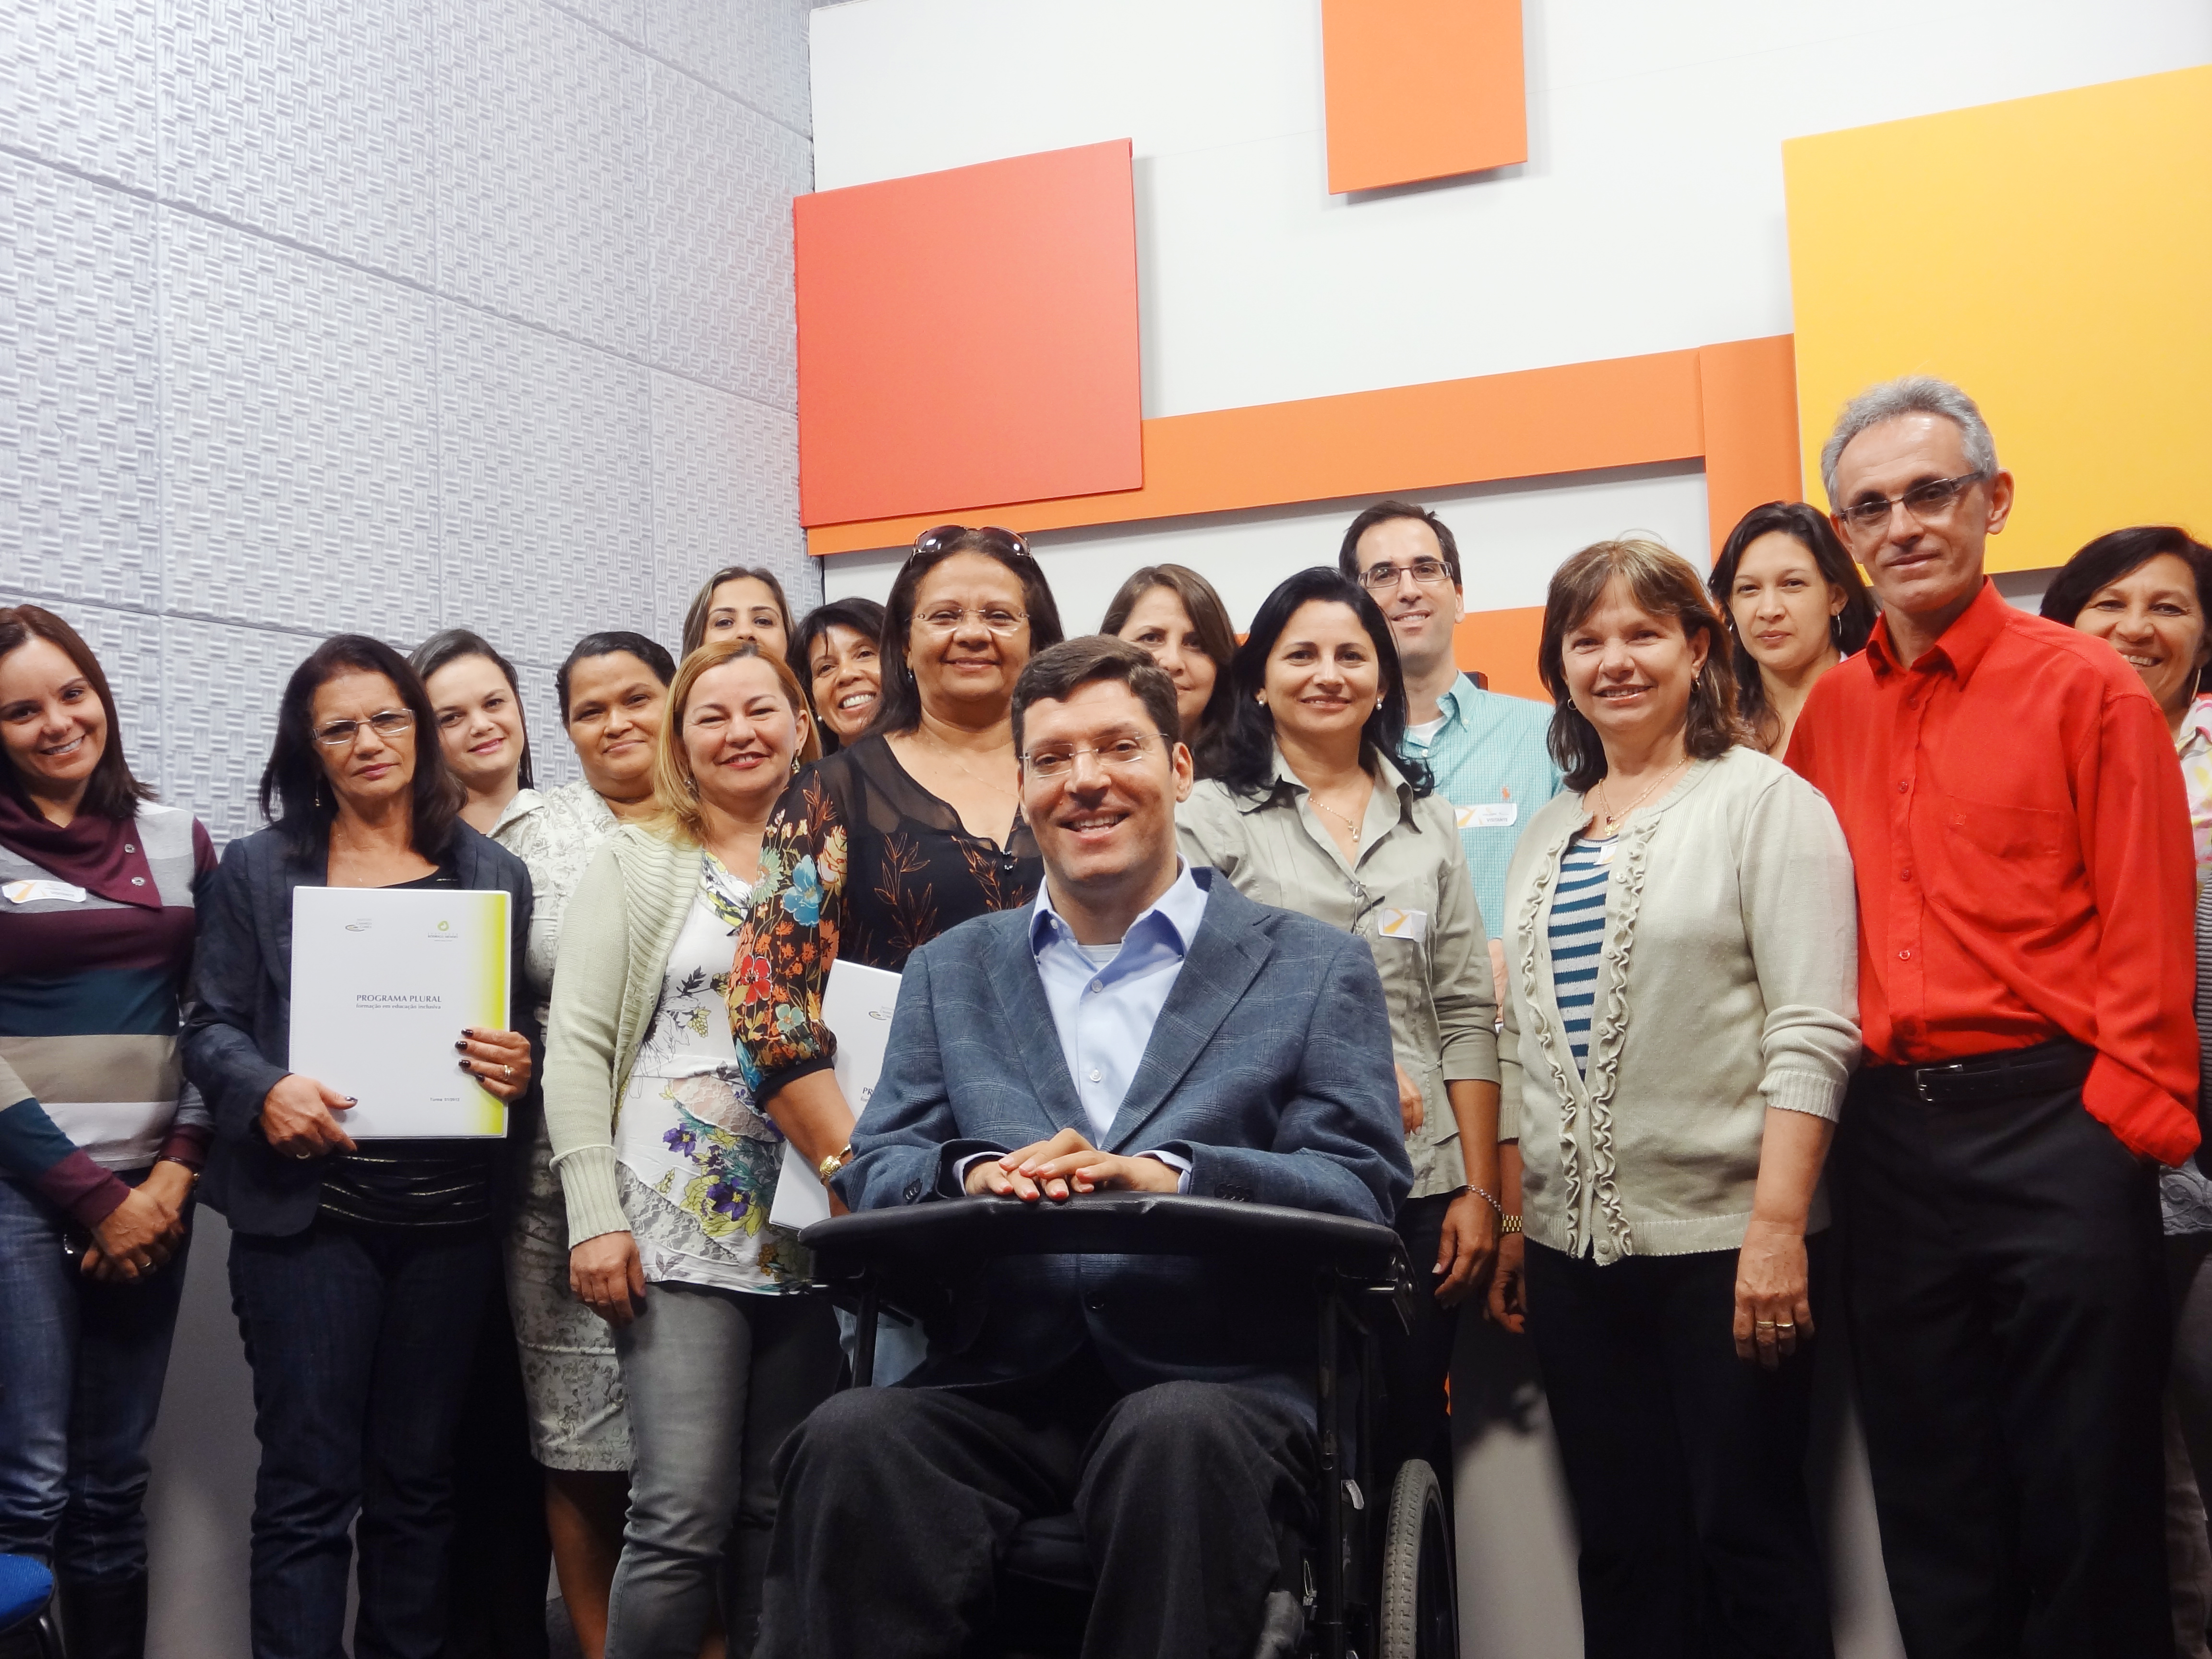 Mulheres e homens posam sorridentes e enfileirados para foto dentro de sala com paredes coloridas. À frente deles está Rodrigo em sua cadeira de rodas.